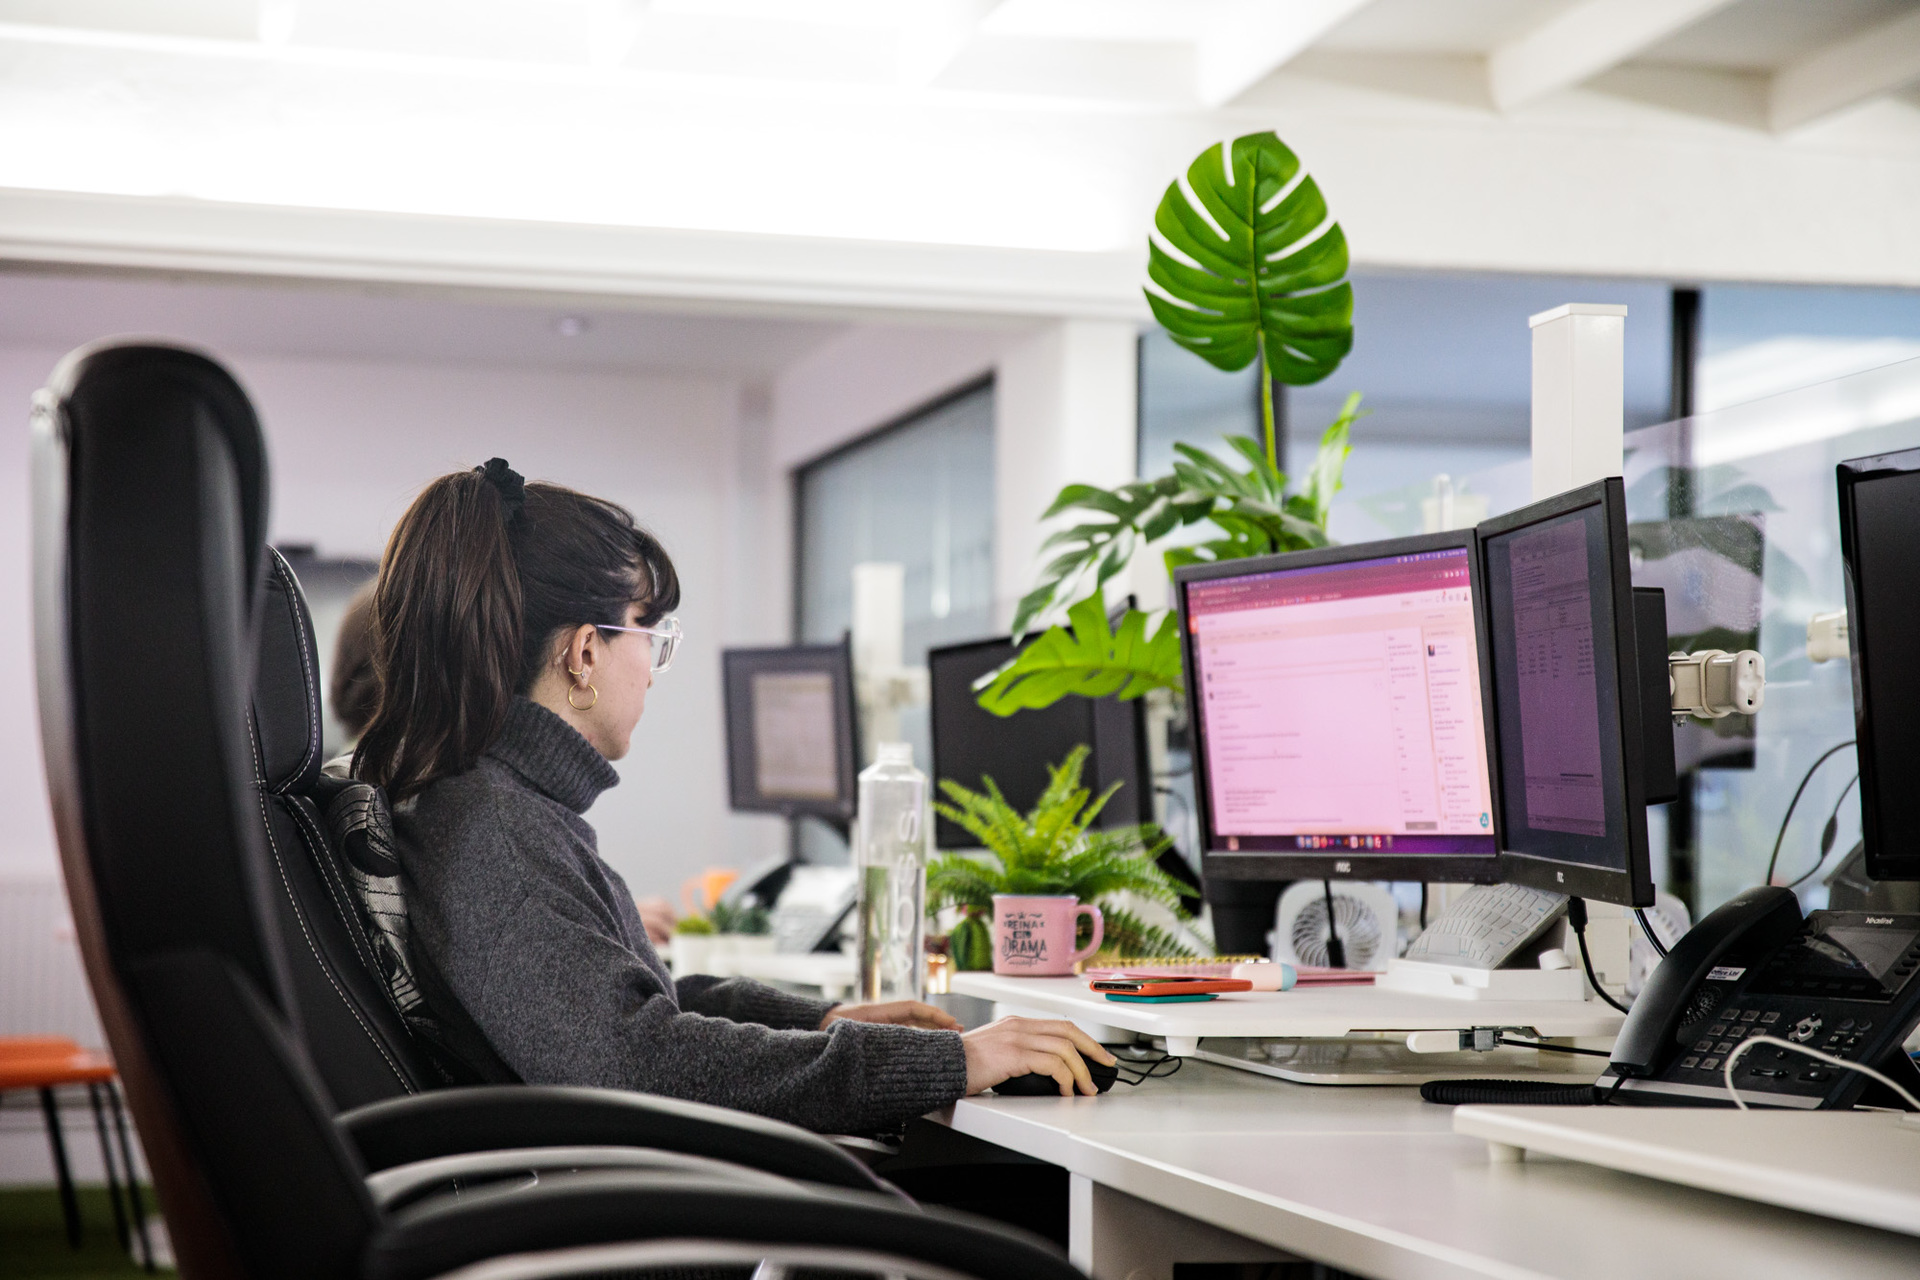 A woman web designer sat at her desk working on her desktop computer